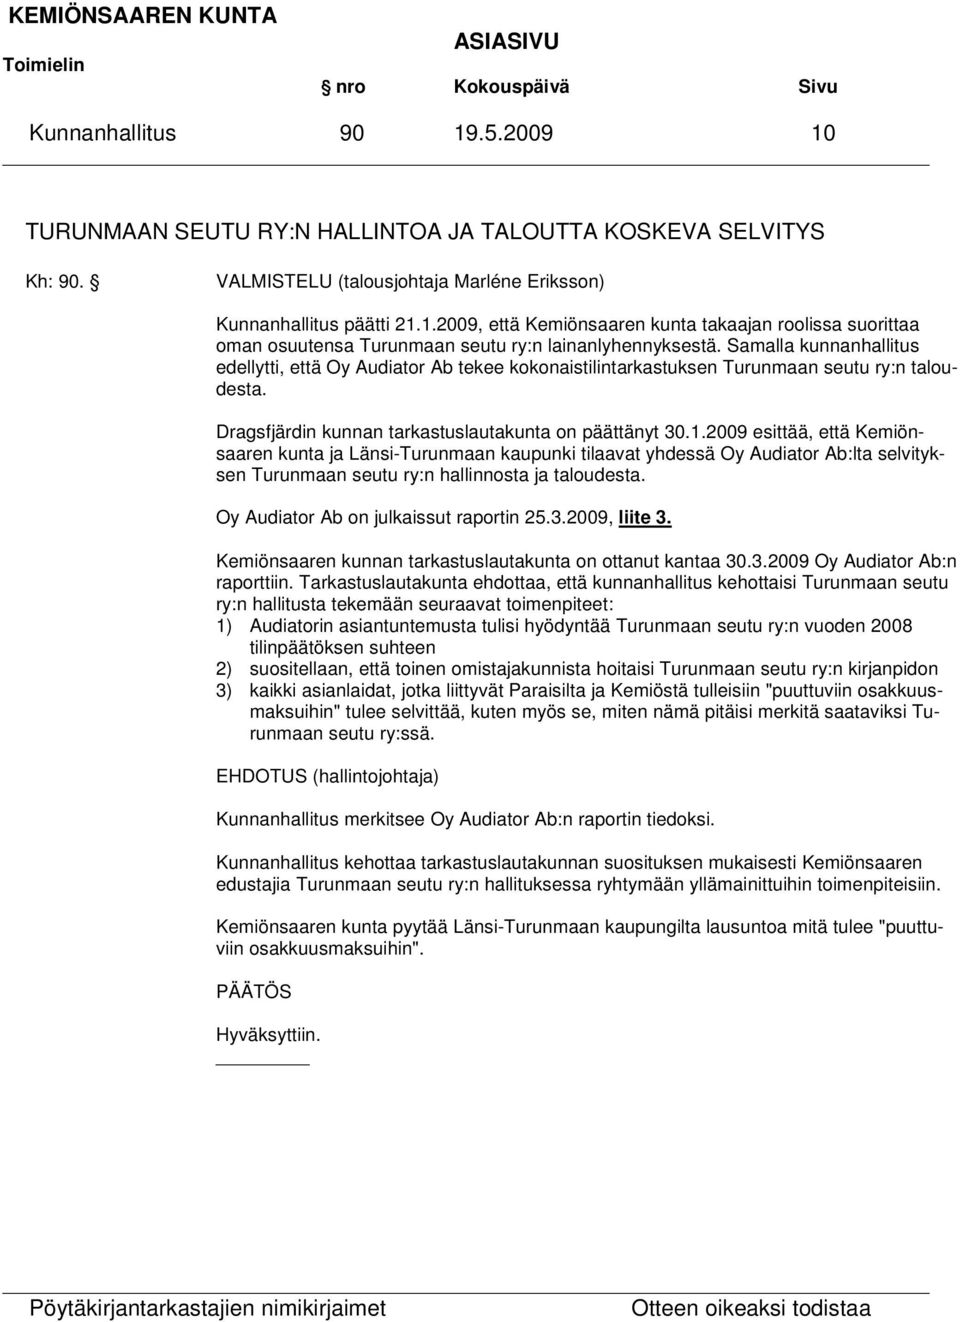 2009 esittää, että Kemiönsaaren kunta ja Länsi-Turunmaan kaupunki tilaavat yhdessä Oy Audiator Ab:lta selvityksen Turunmaan seutu ry:n hallinnosta ja taloudesta.